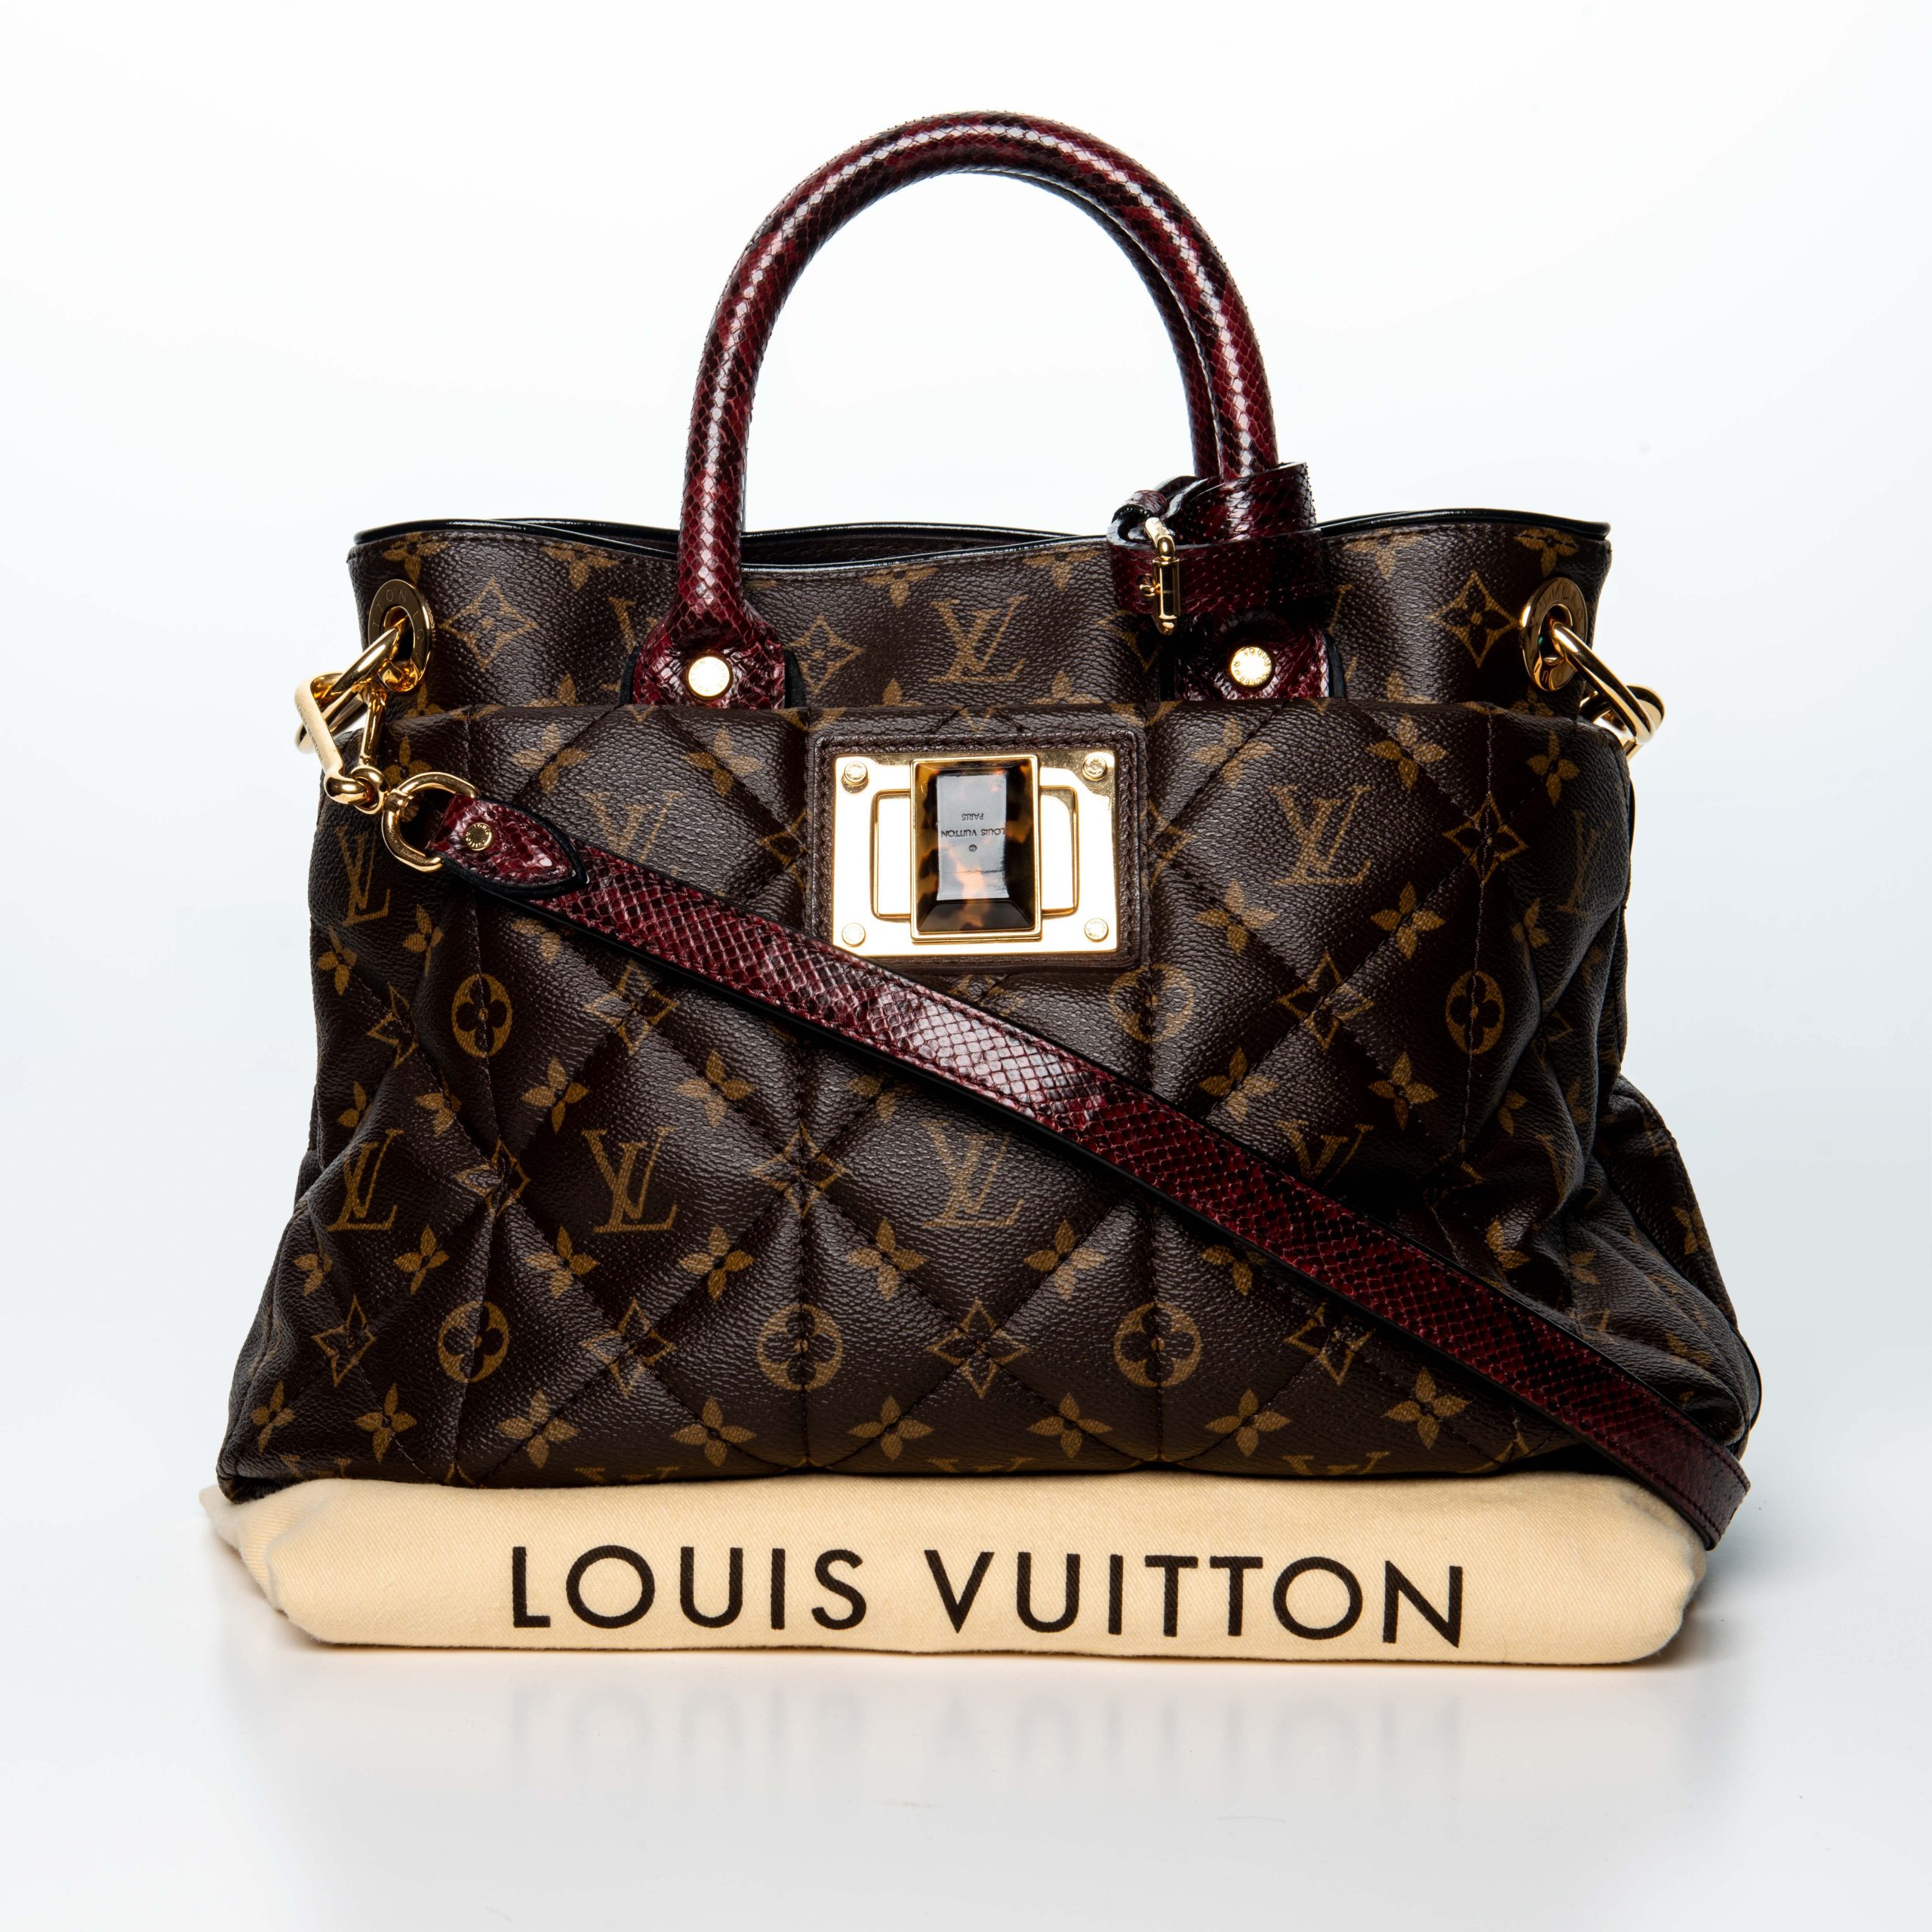 Louis Vuitton è un'azienda specializzata in accessori moda e